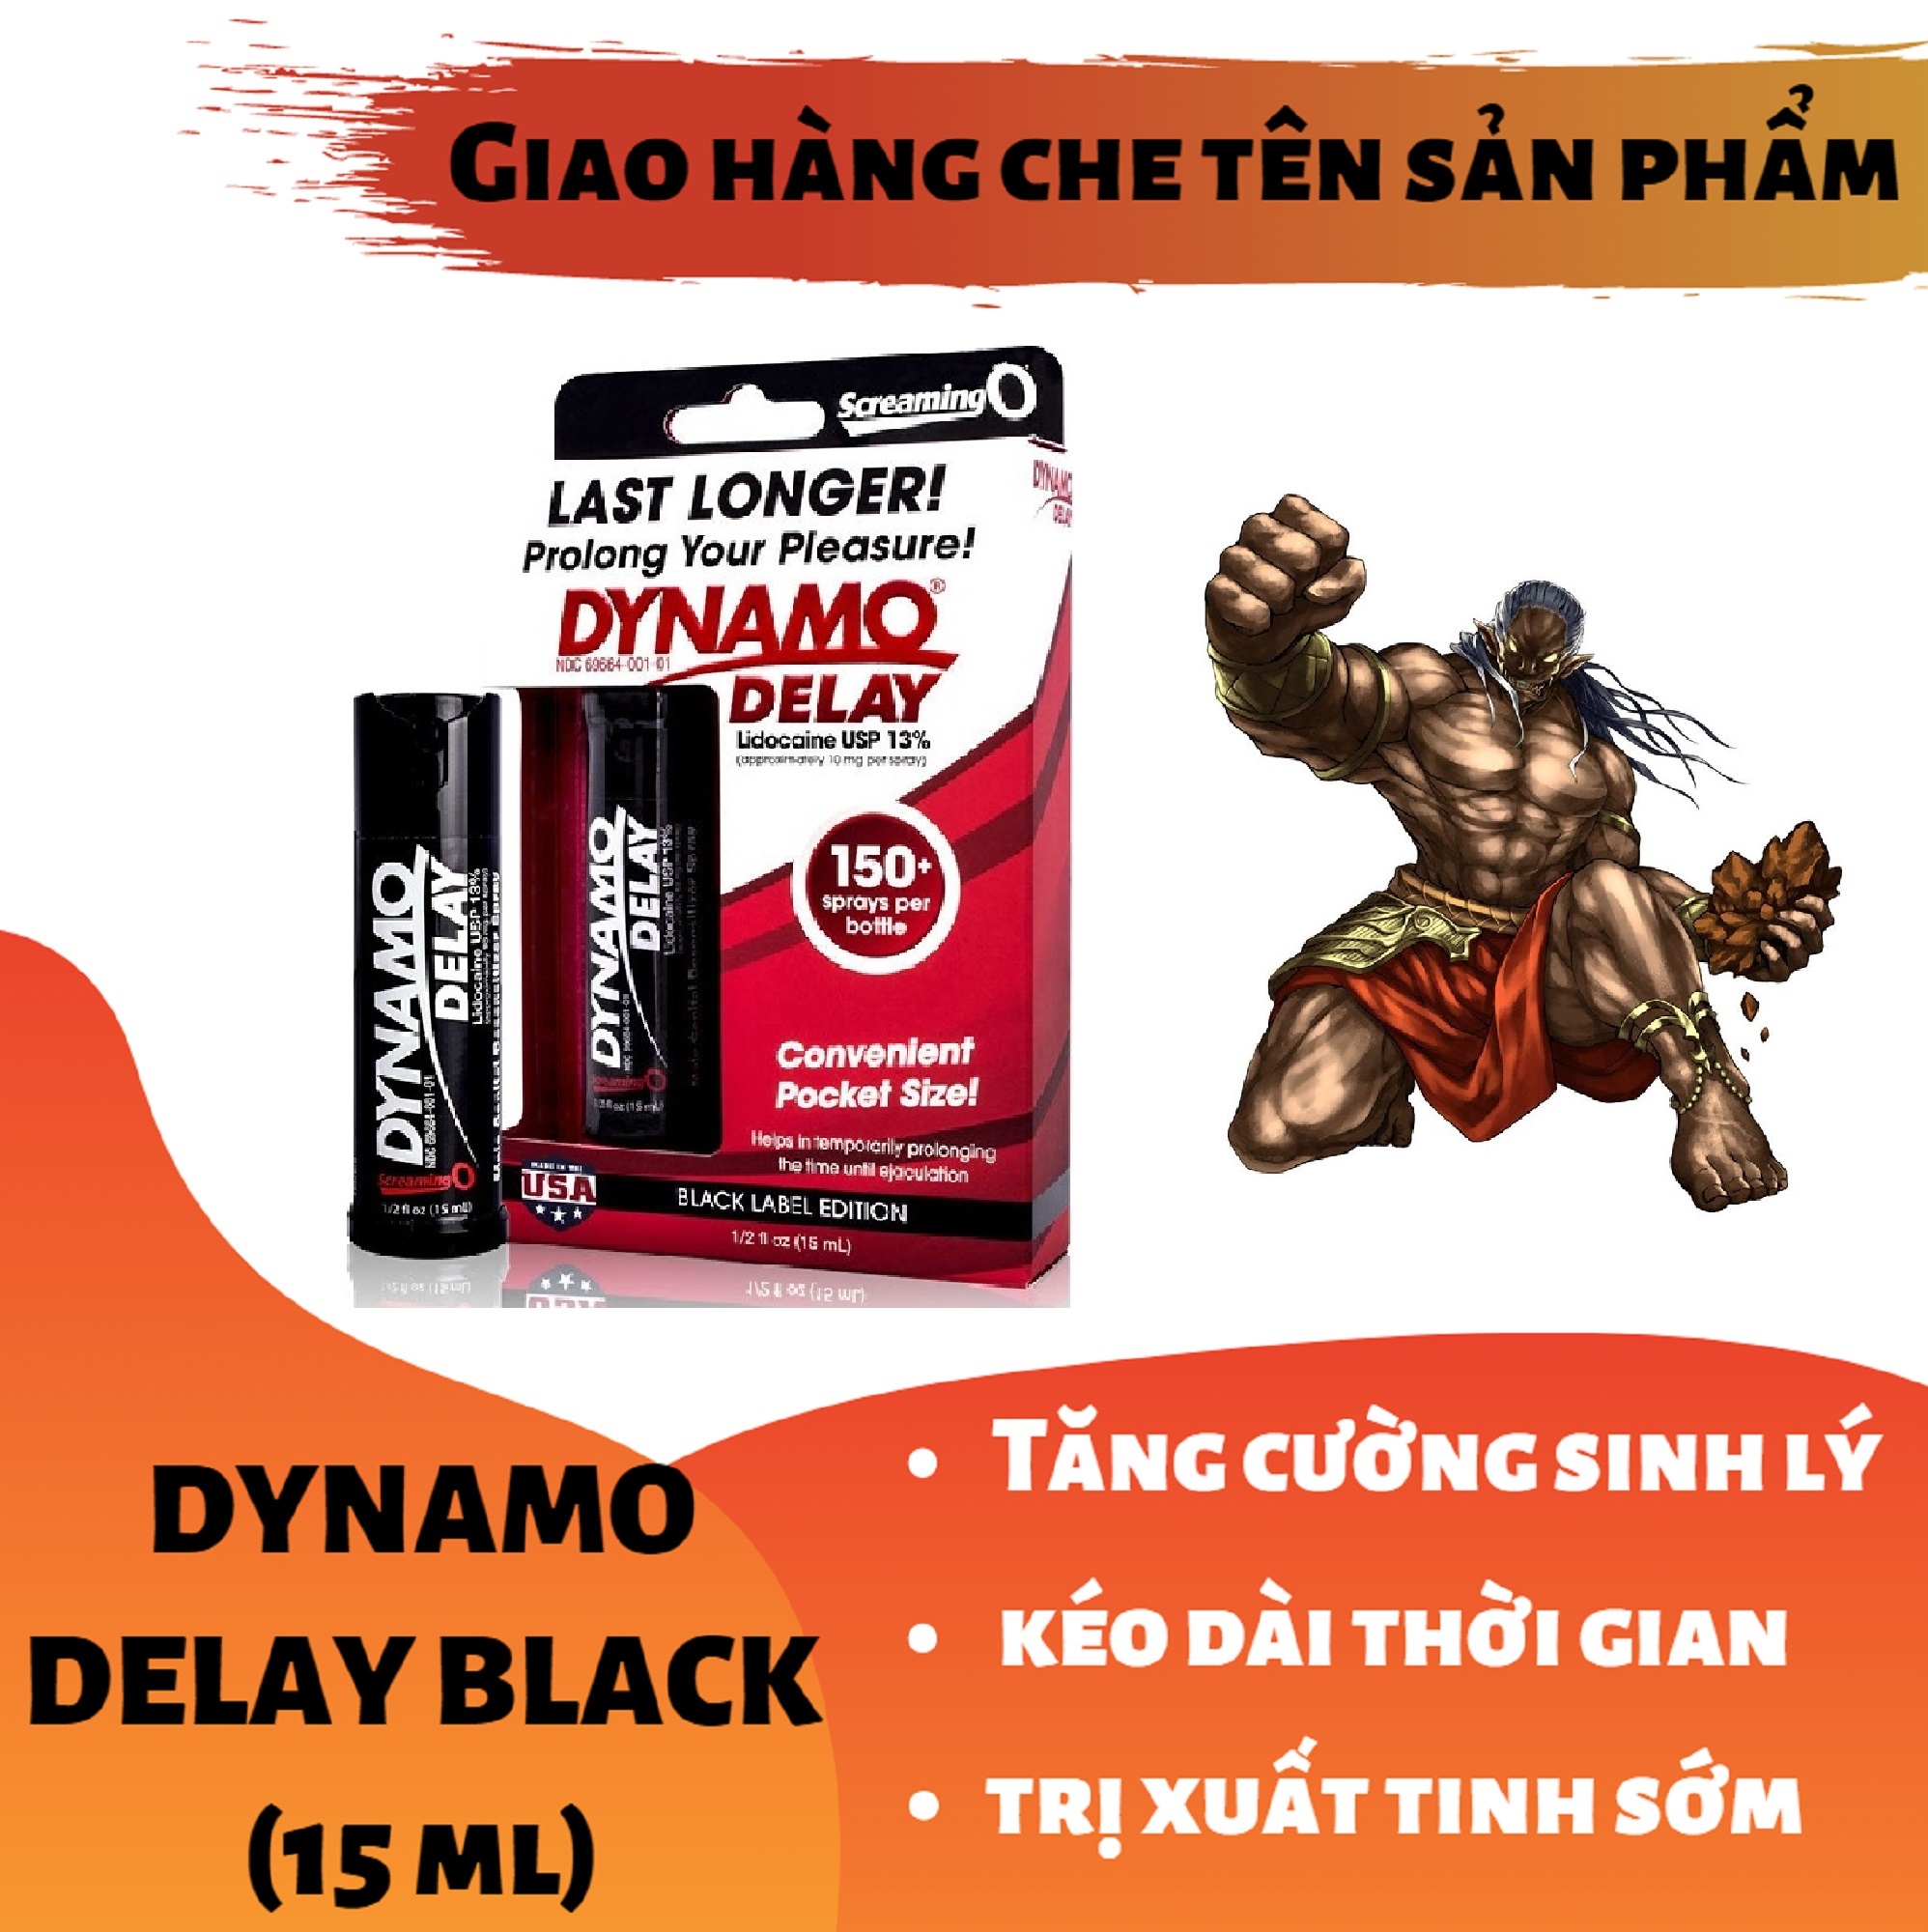 Chai xịt_DYNAMO DELAY BLACK LABEL EDITION phiên bản đặc biệt cao cấp tăng